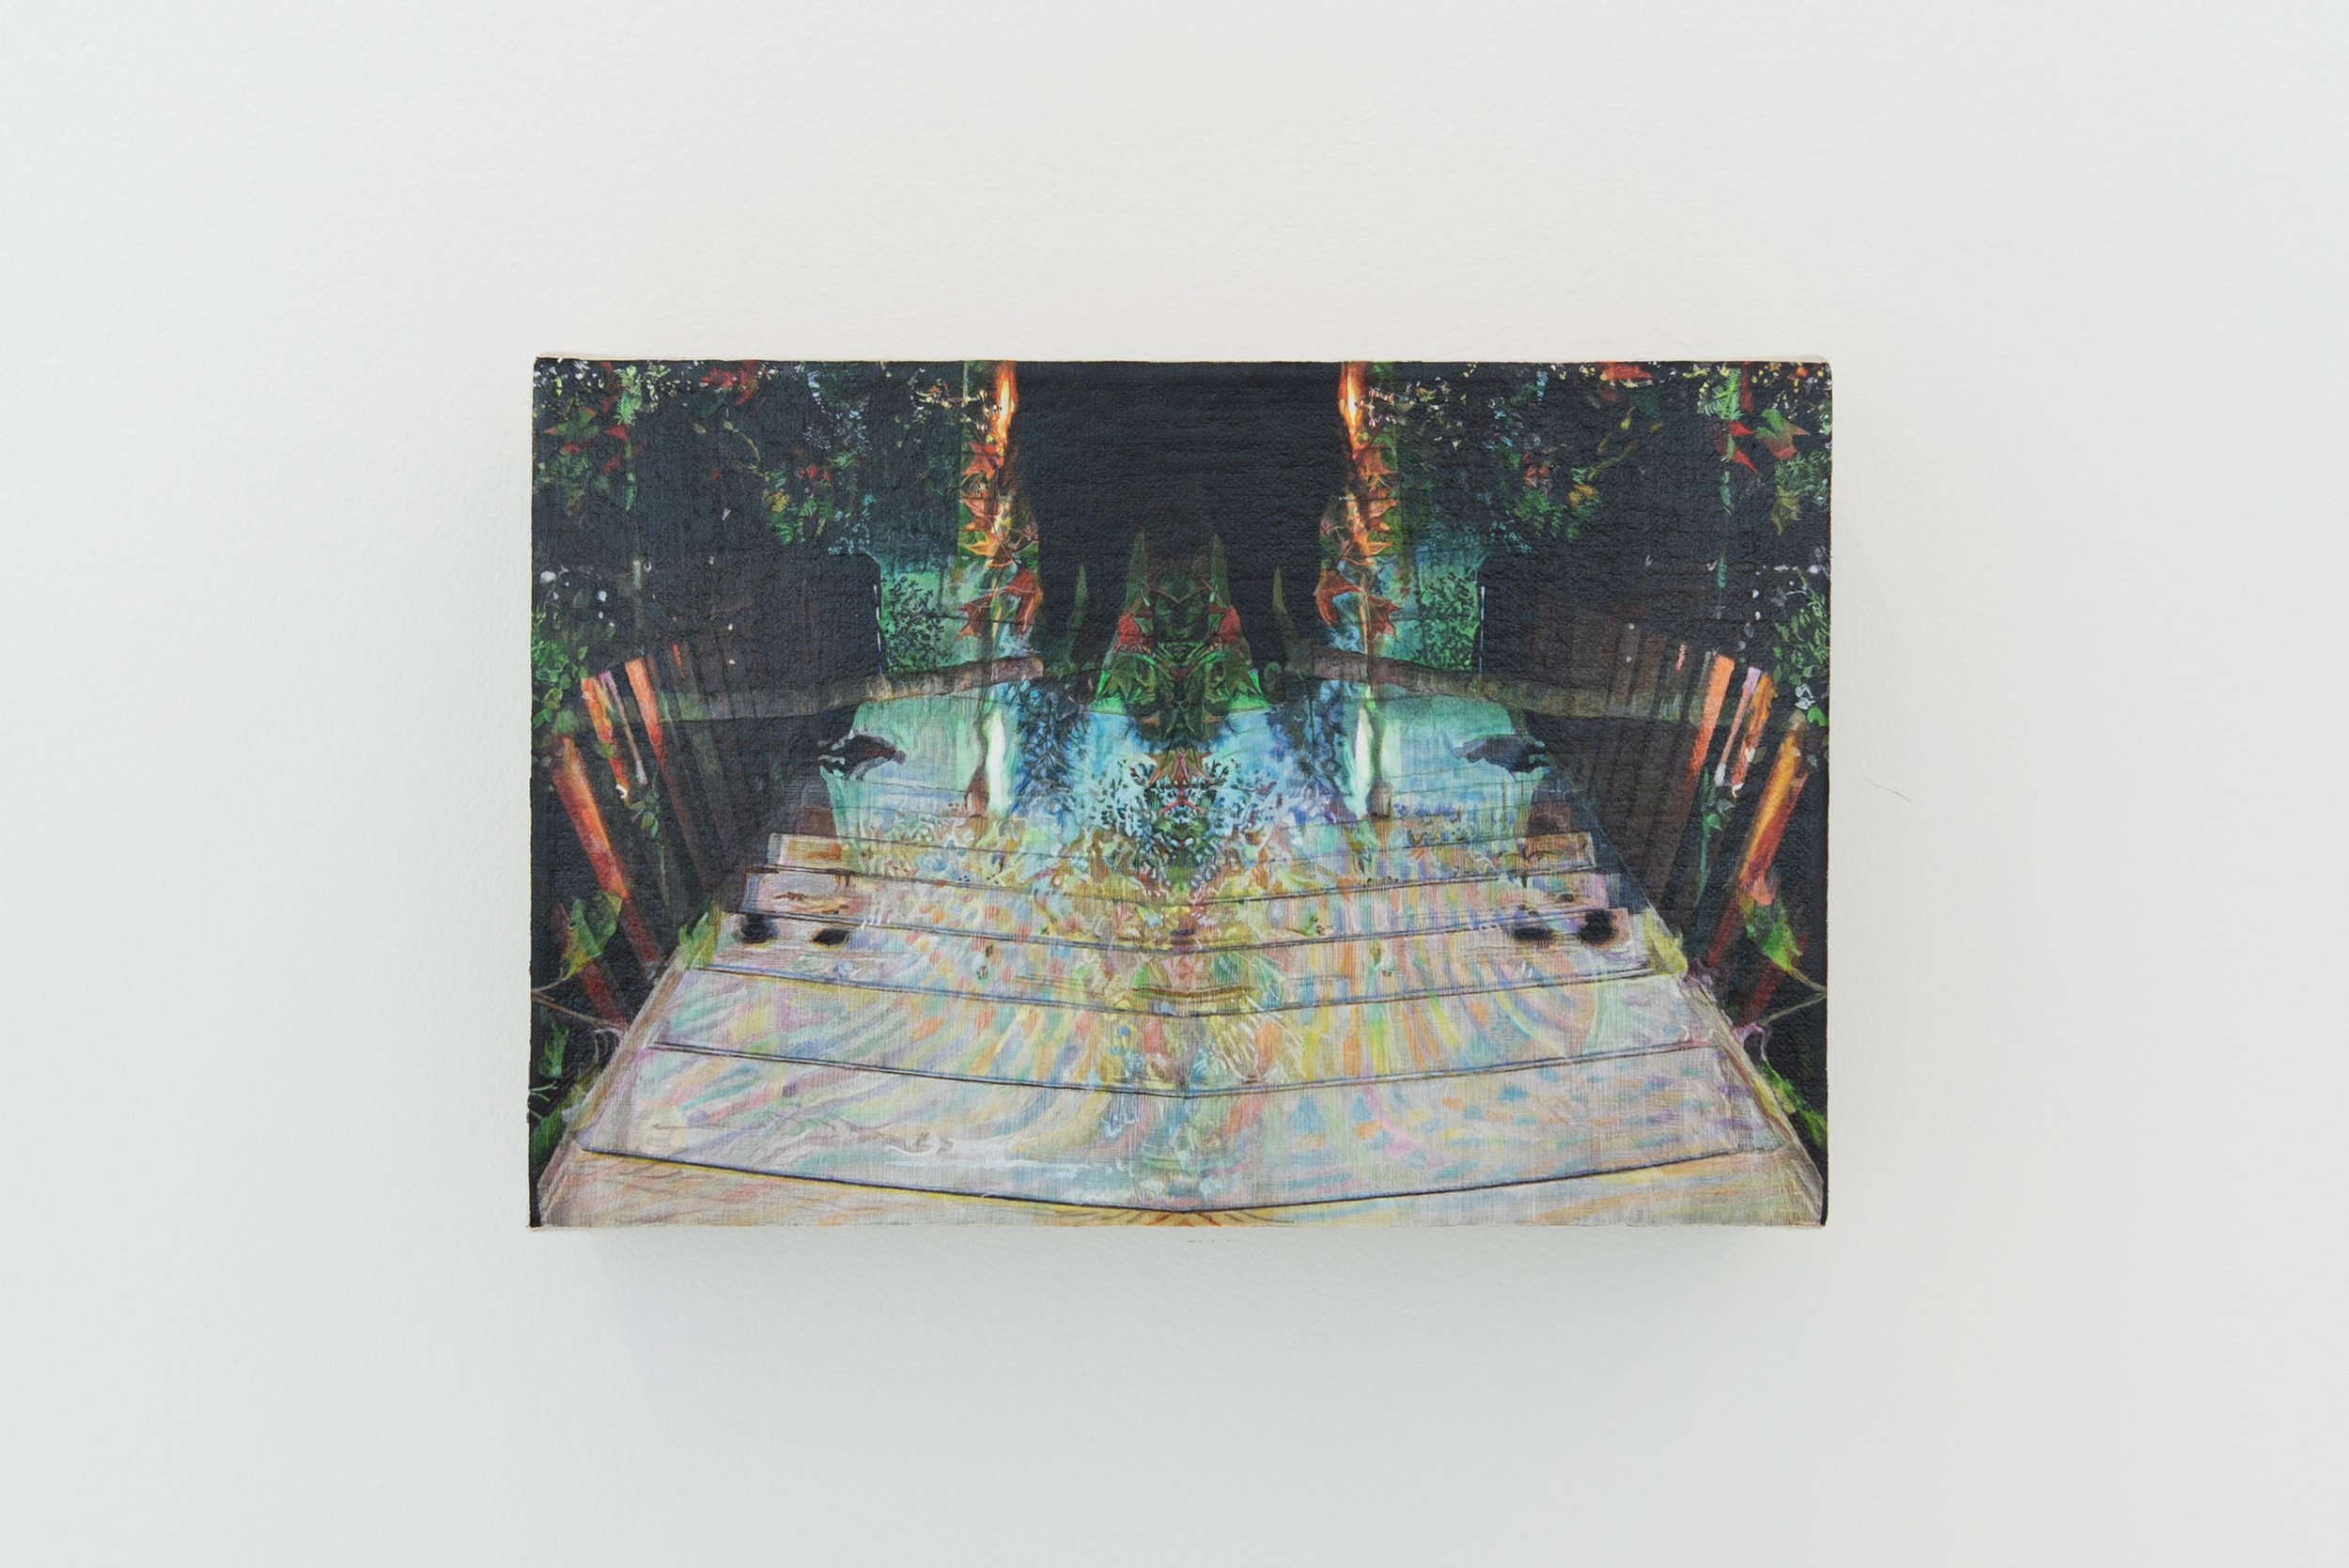   Suivre le Nord magnétique ,  Johannie Séguin , acrylique sur toile de lin, 5 x 7 ½ pouces, 2021  Crédit photo: Donald Trépanier  Disponible chez  Rock Lamothe - Art contemporain  